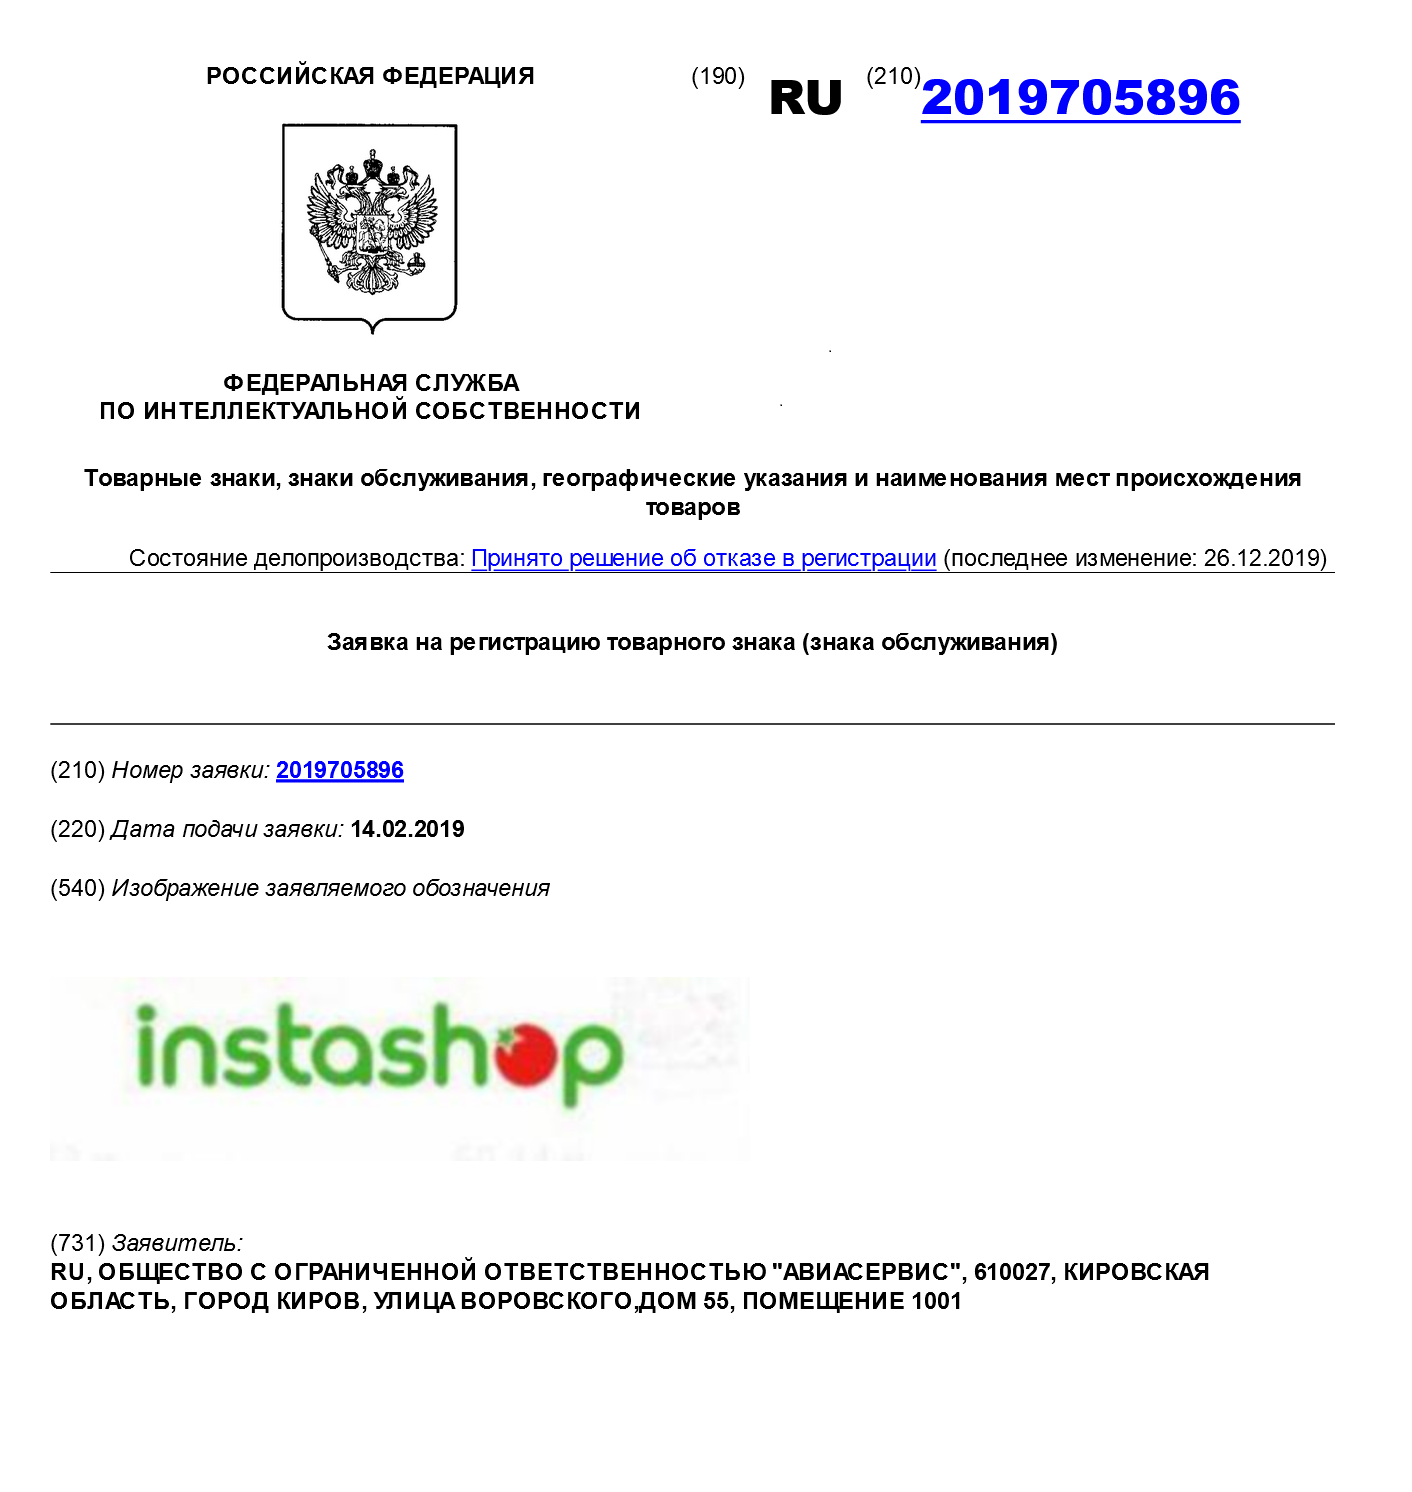 Кировская компания не смогла добиться регистрации товарного знака Instashop. In100gramm и даже Tittygram тоже получили отказы